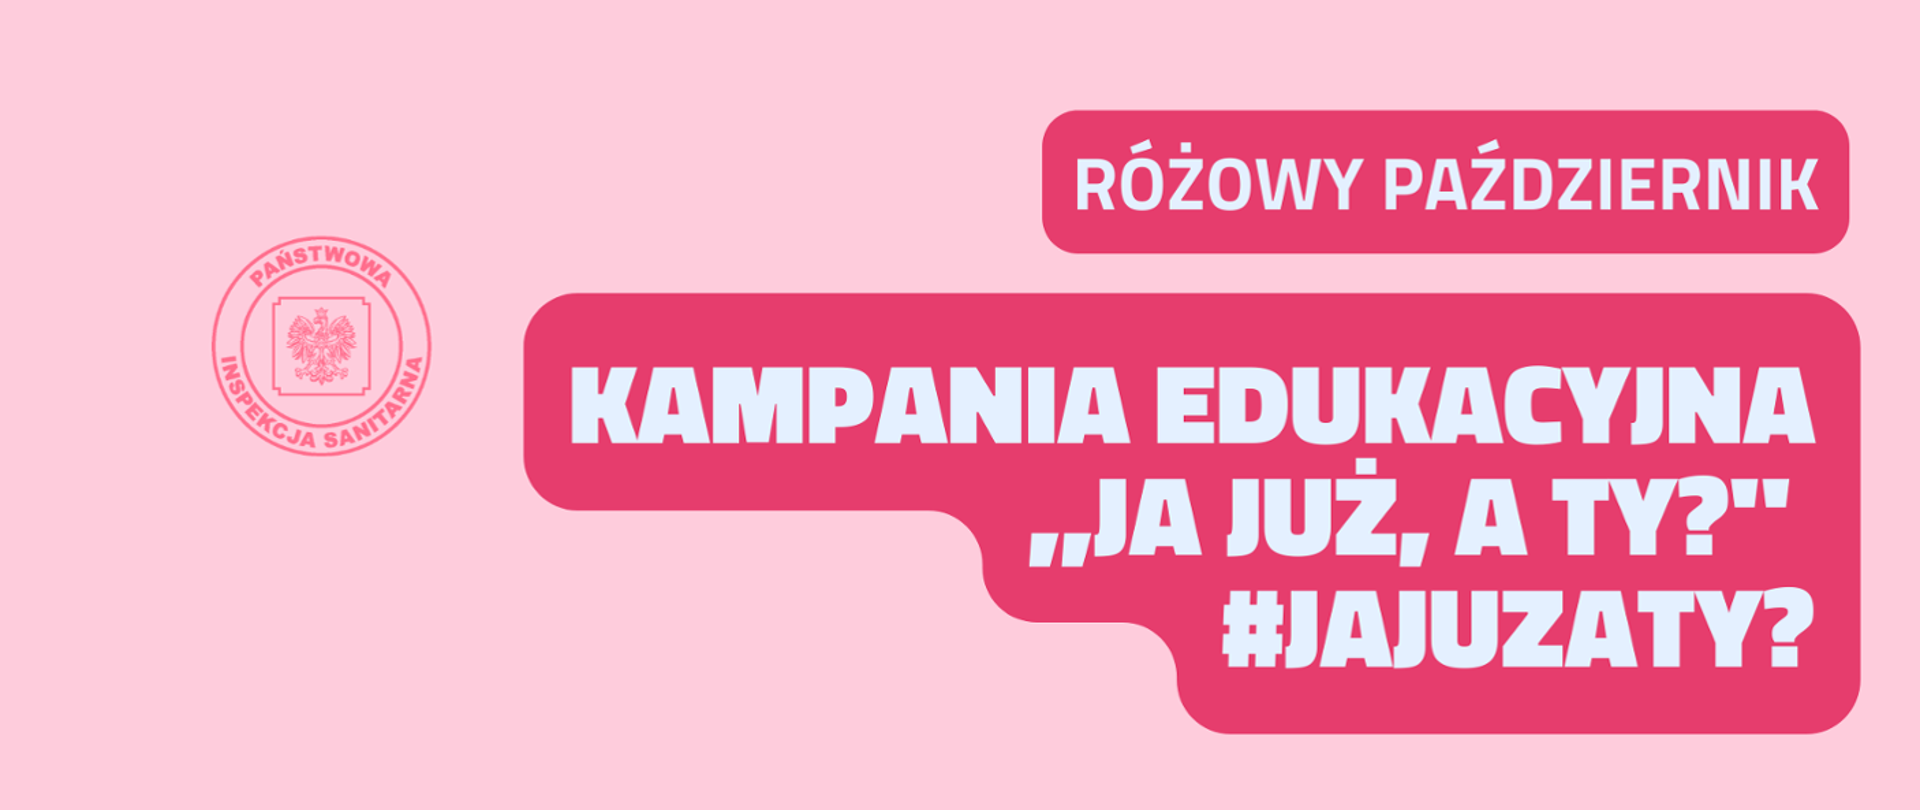 #jajuzaty?